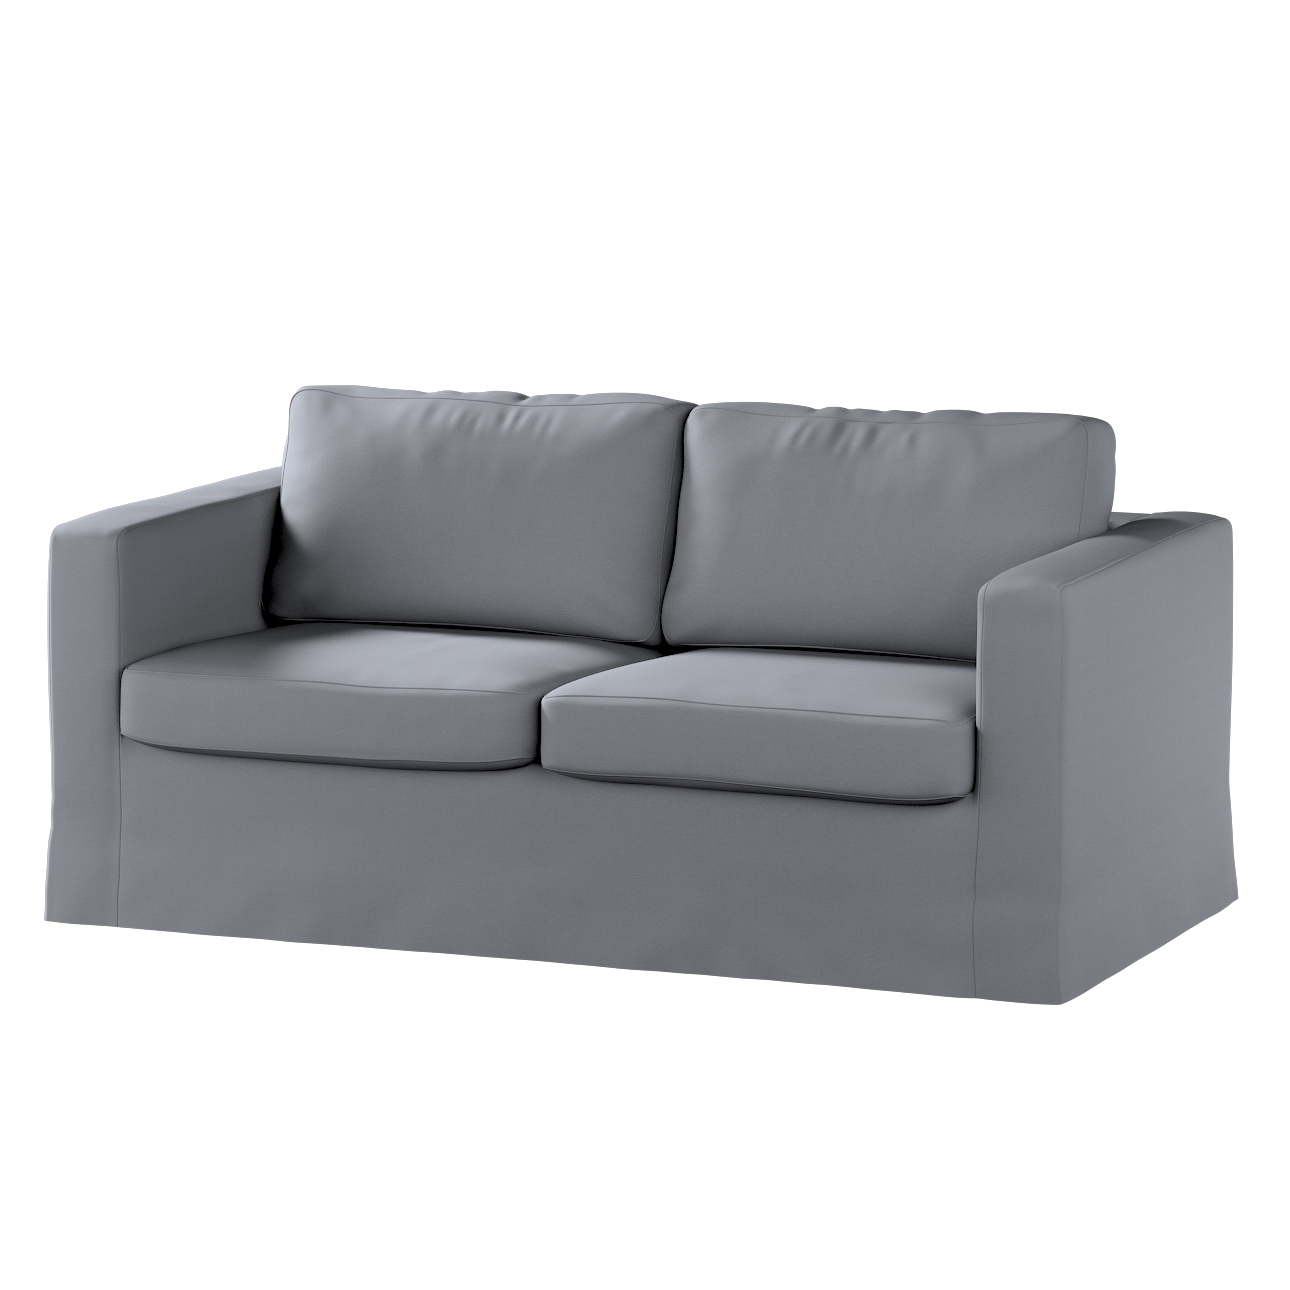 Bezug für Karlstad 2-Sitzer Sofa nicht ausklappbar, lang, silbergrau, Sofah günstig online kaufen